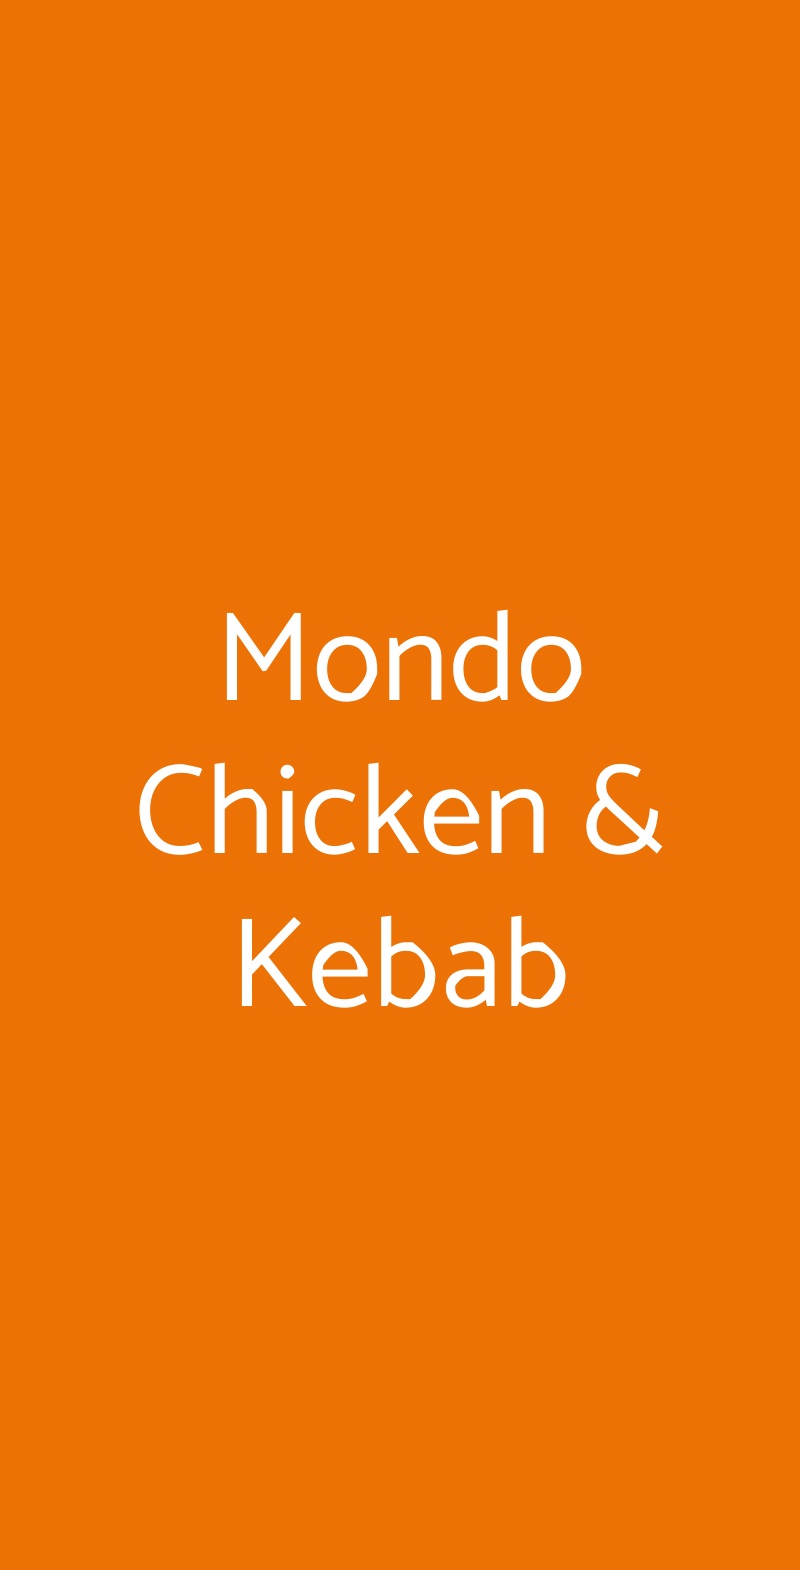 Mondo Chicken & Kebab Viareggio menù 1 pagina